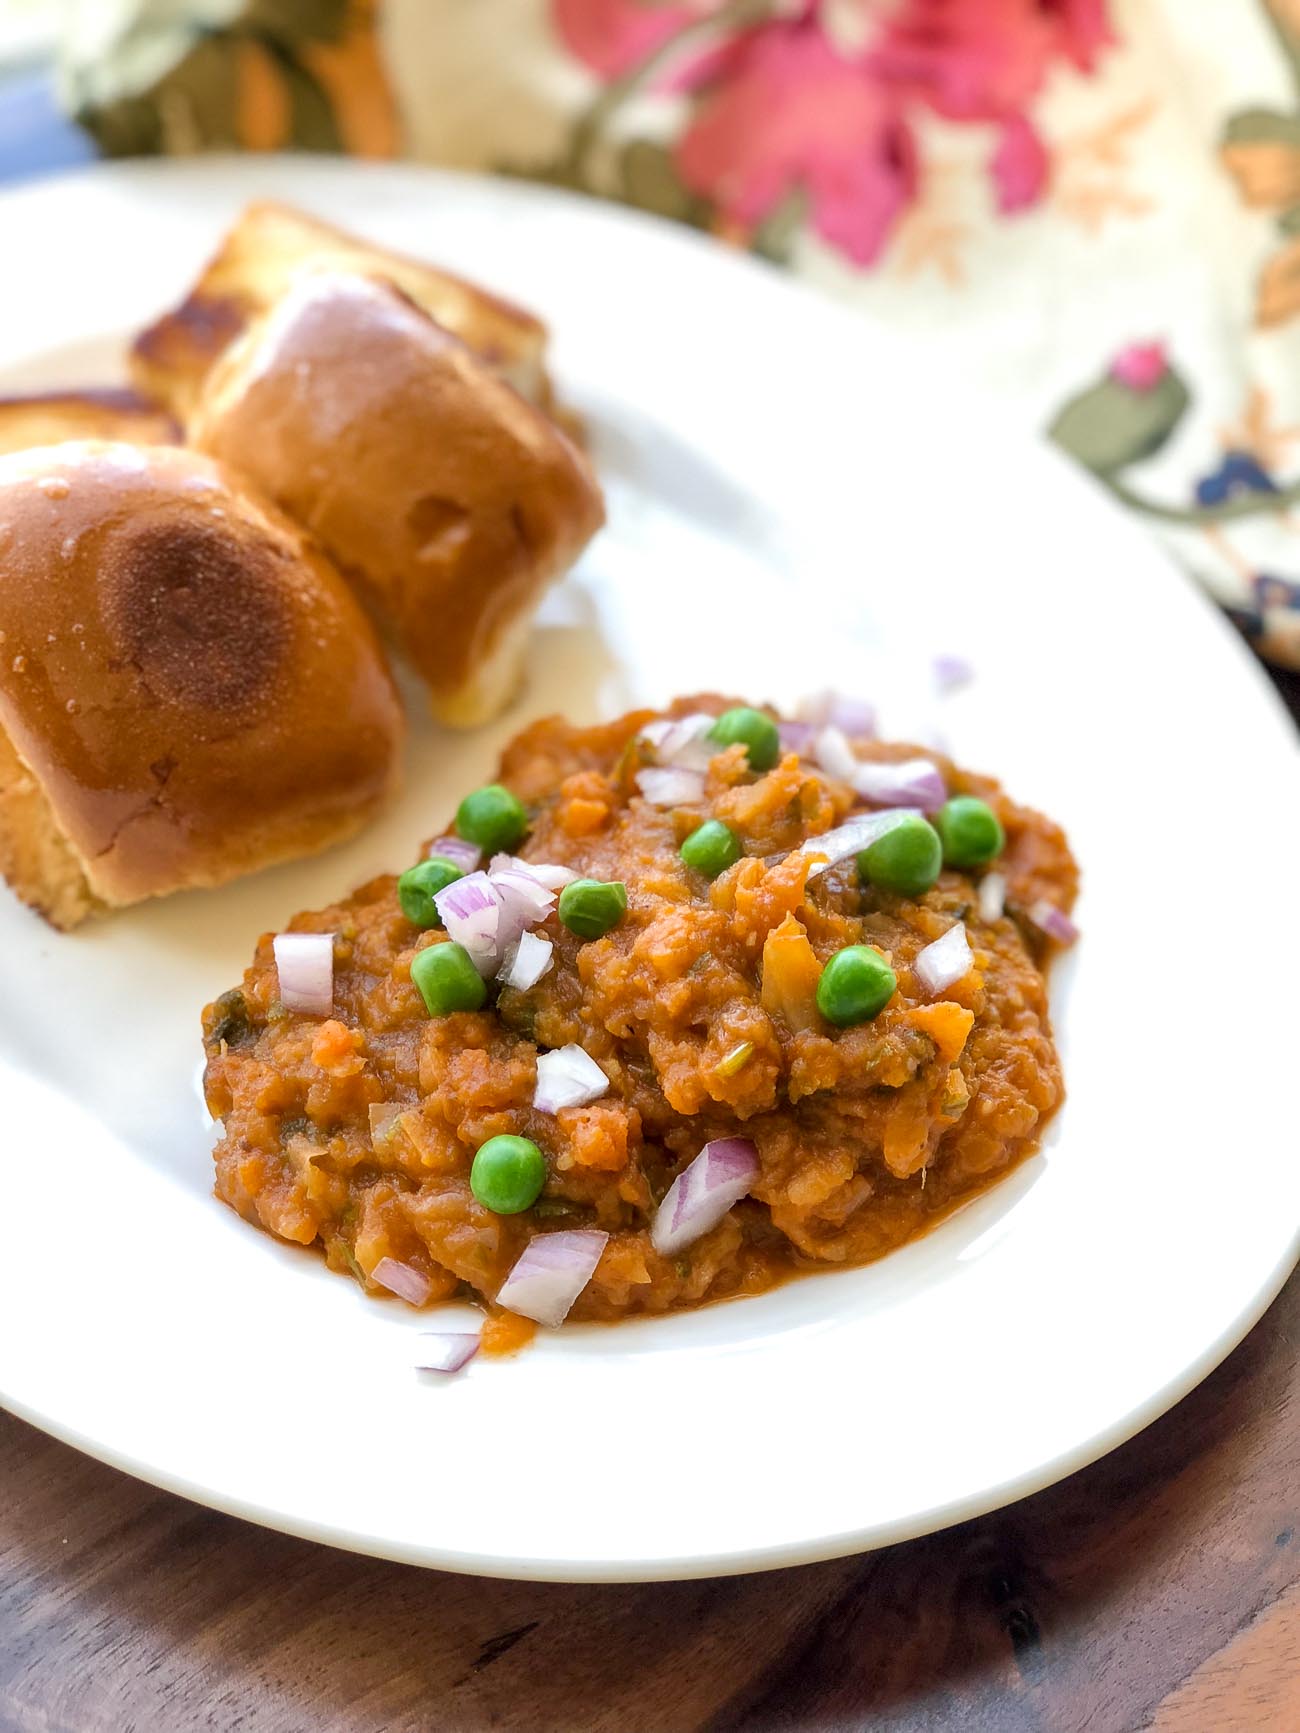 Homemade Pav Bhaji Recipe -Mumbai Style Street Food by Archana's Kitchen